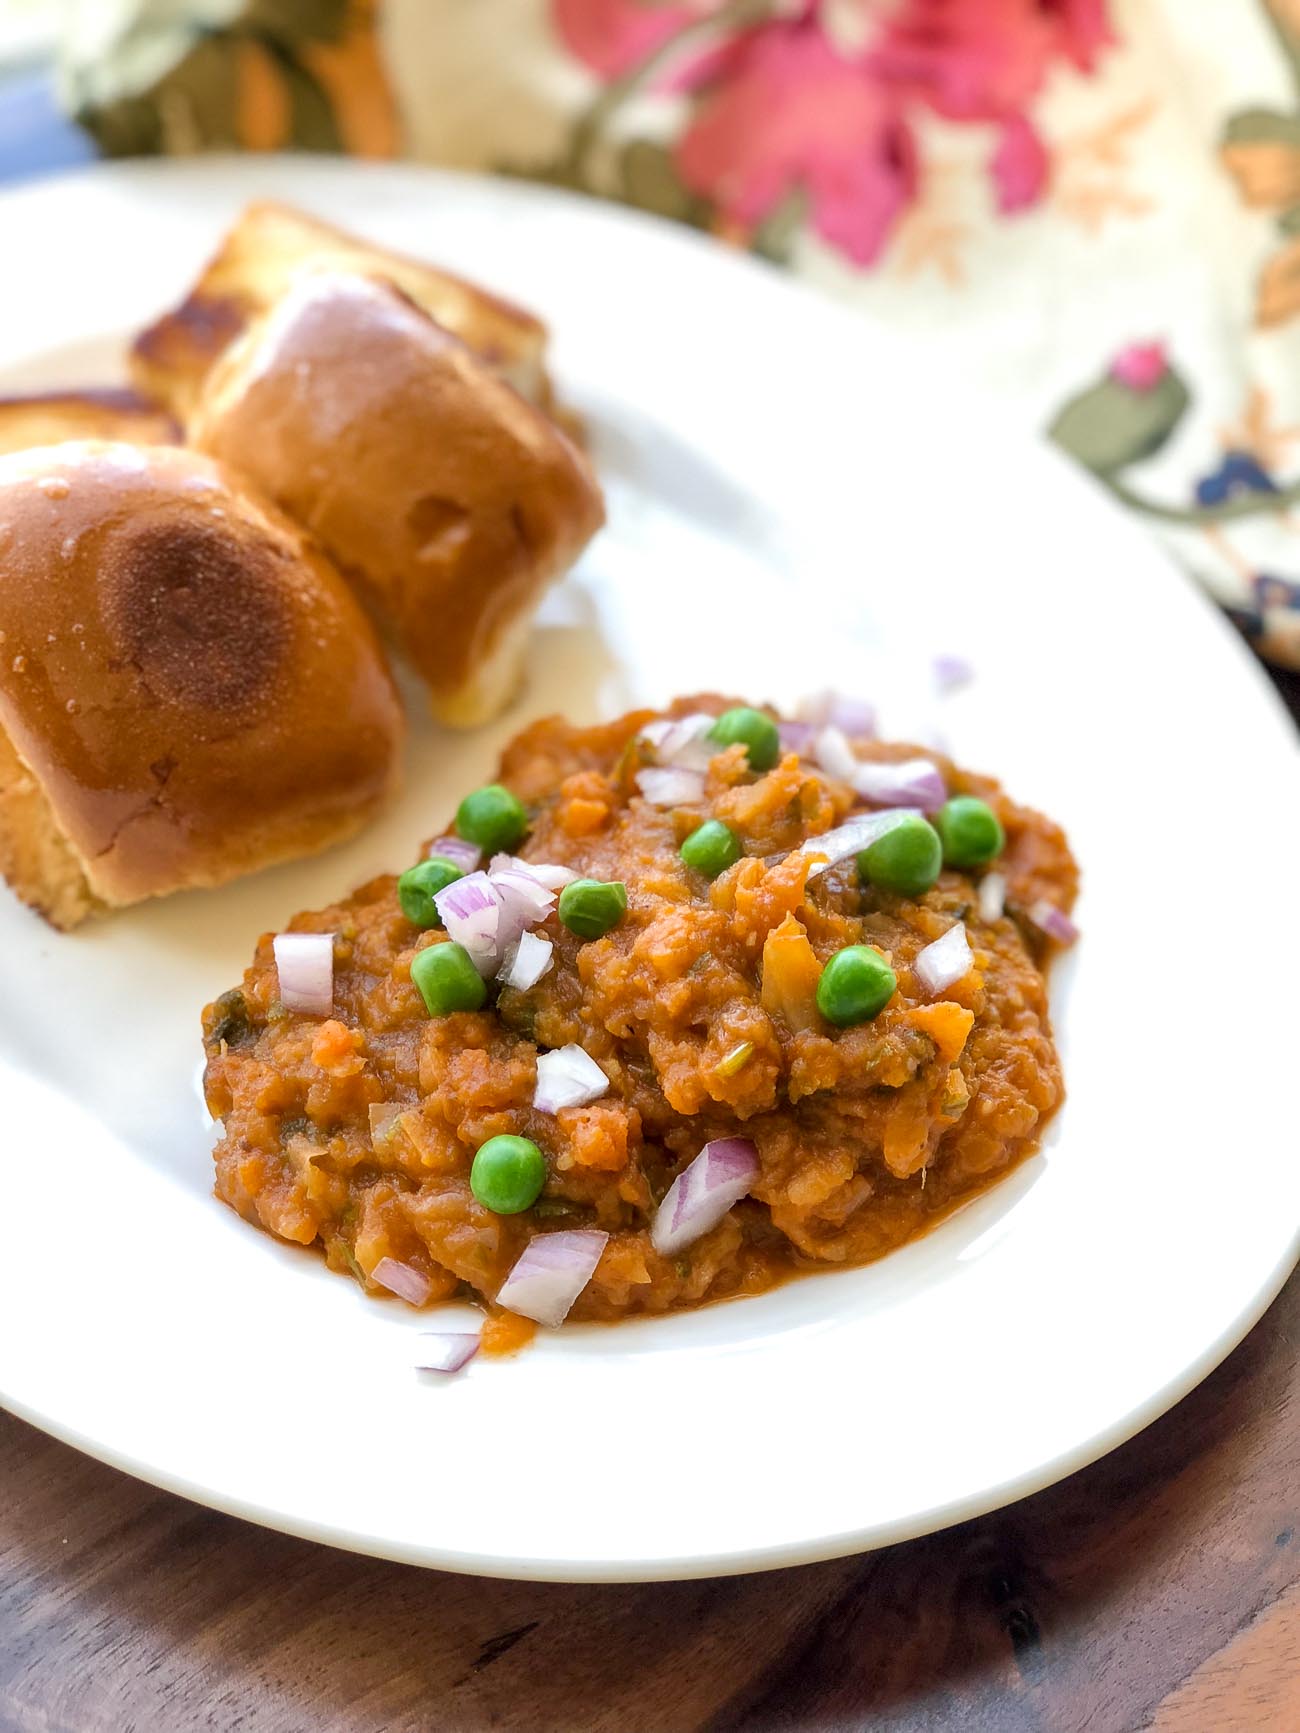 Homemade Pav Bhaji Recipe -Mumbai Style Street Food by Archana's Kitchen